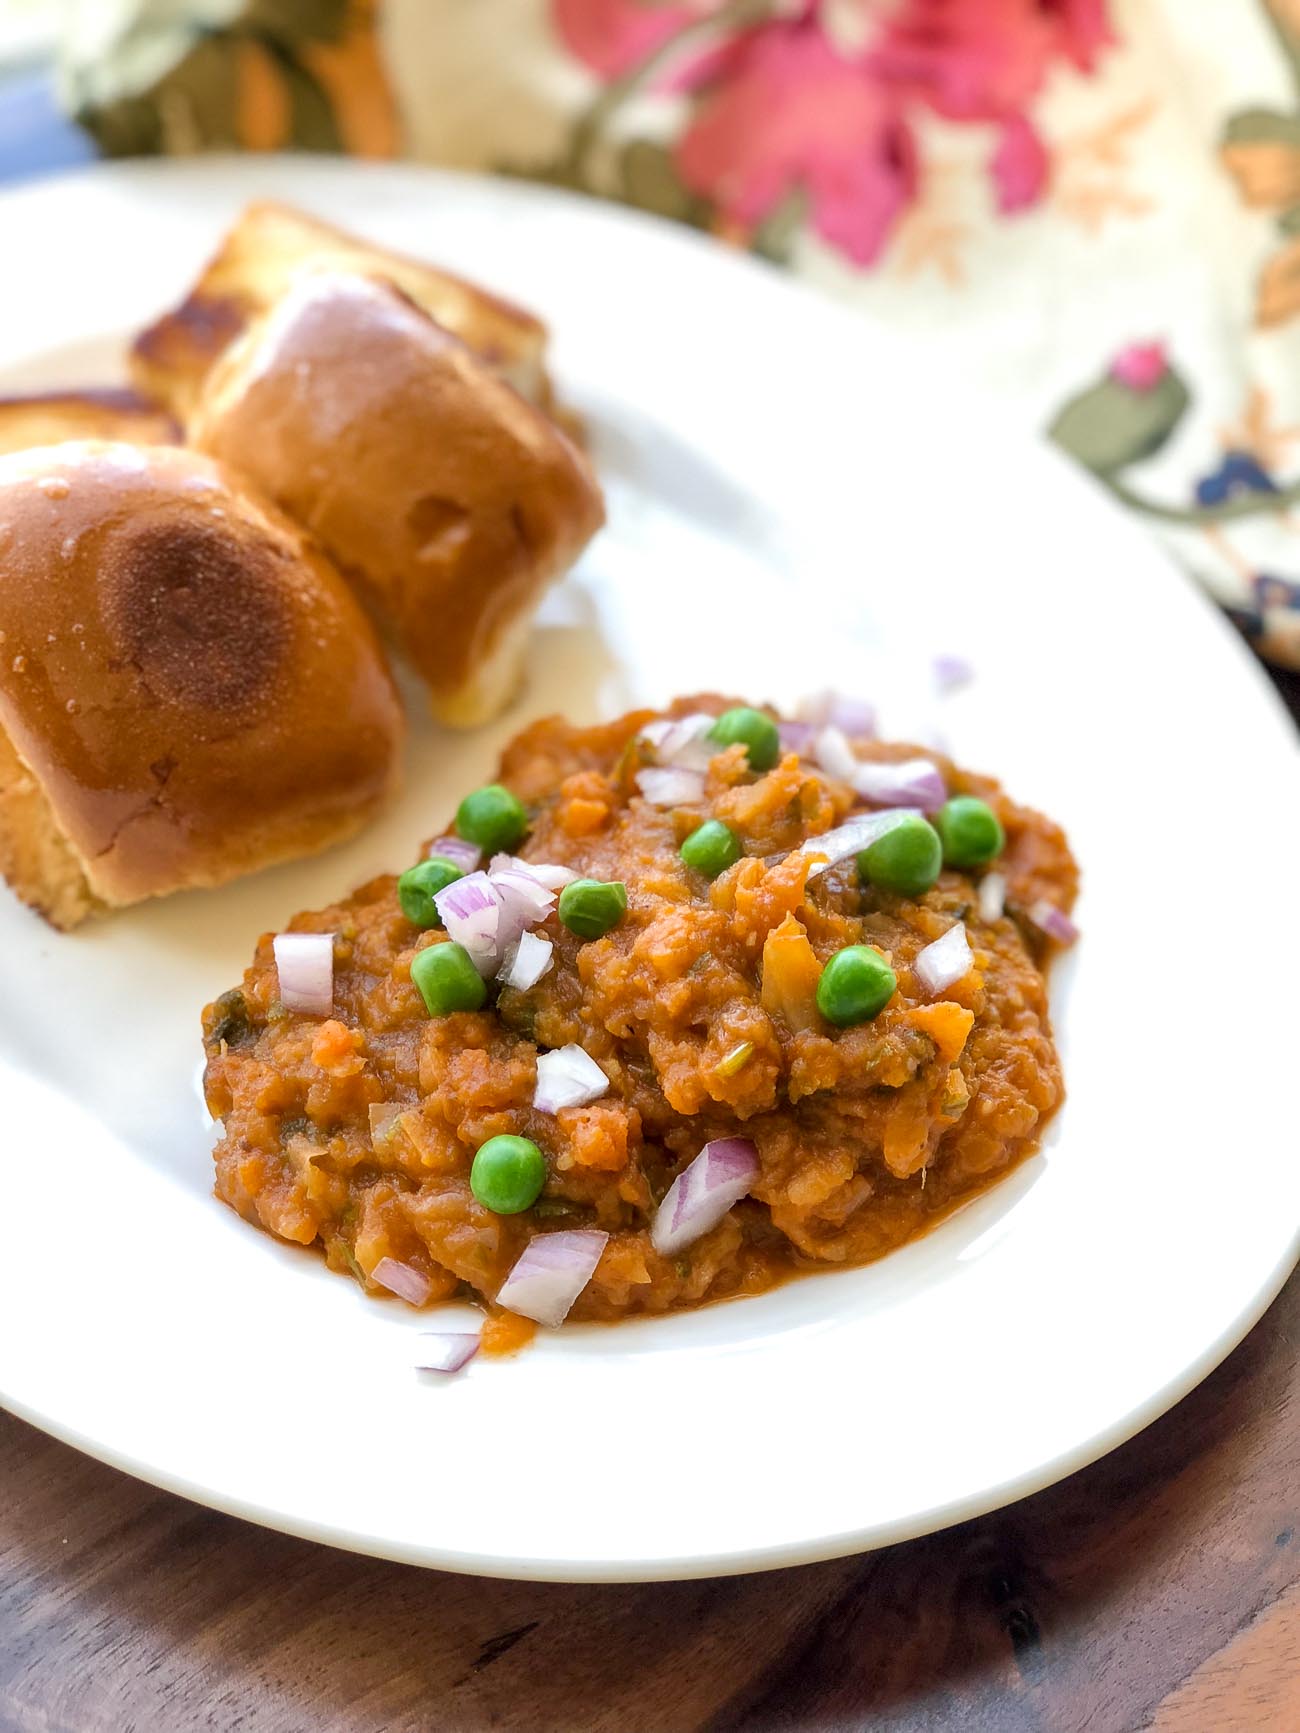 Homemade Pav Bhaji Recipe -Mumbai Style Street Food by Archana's Kitchen